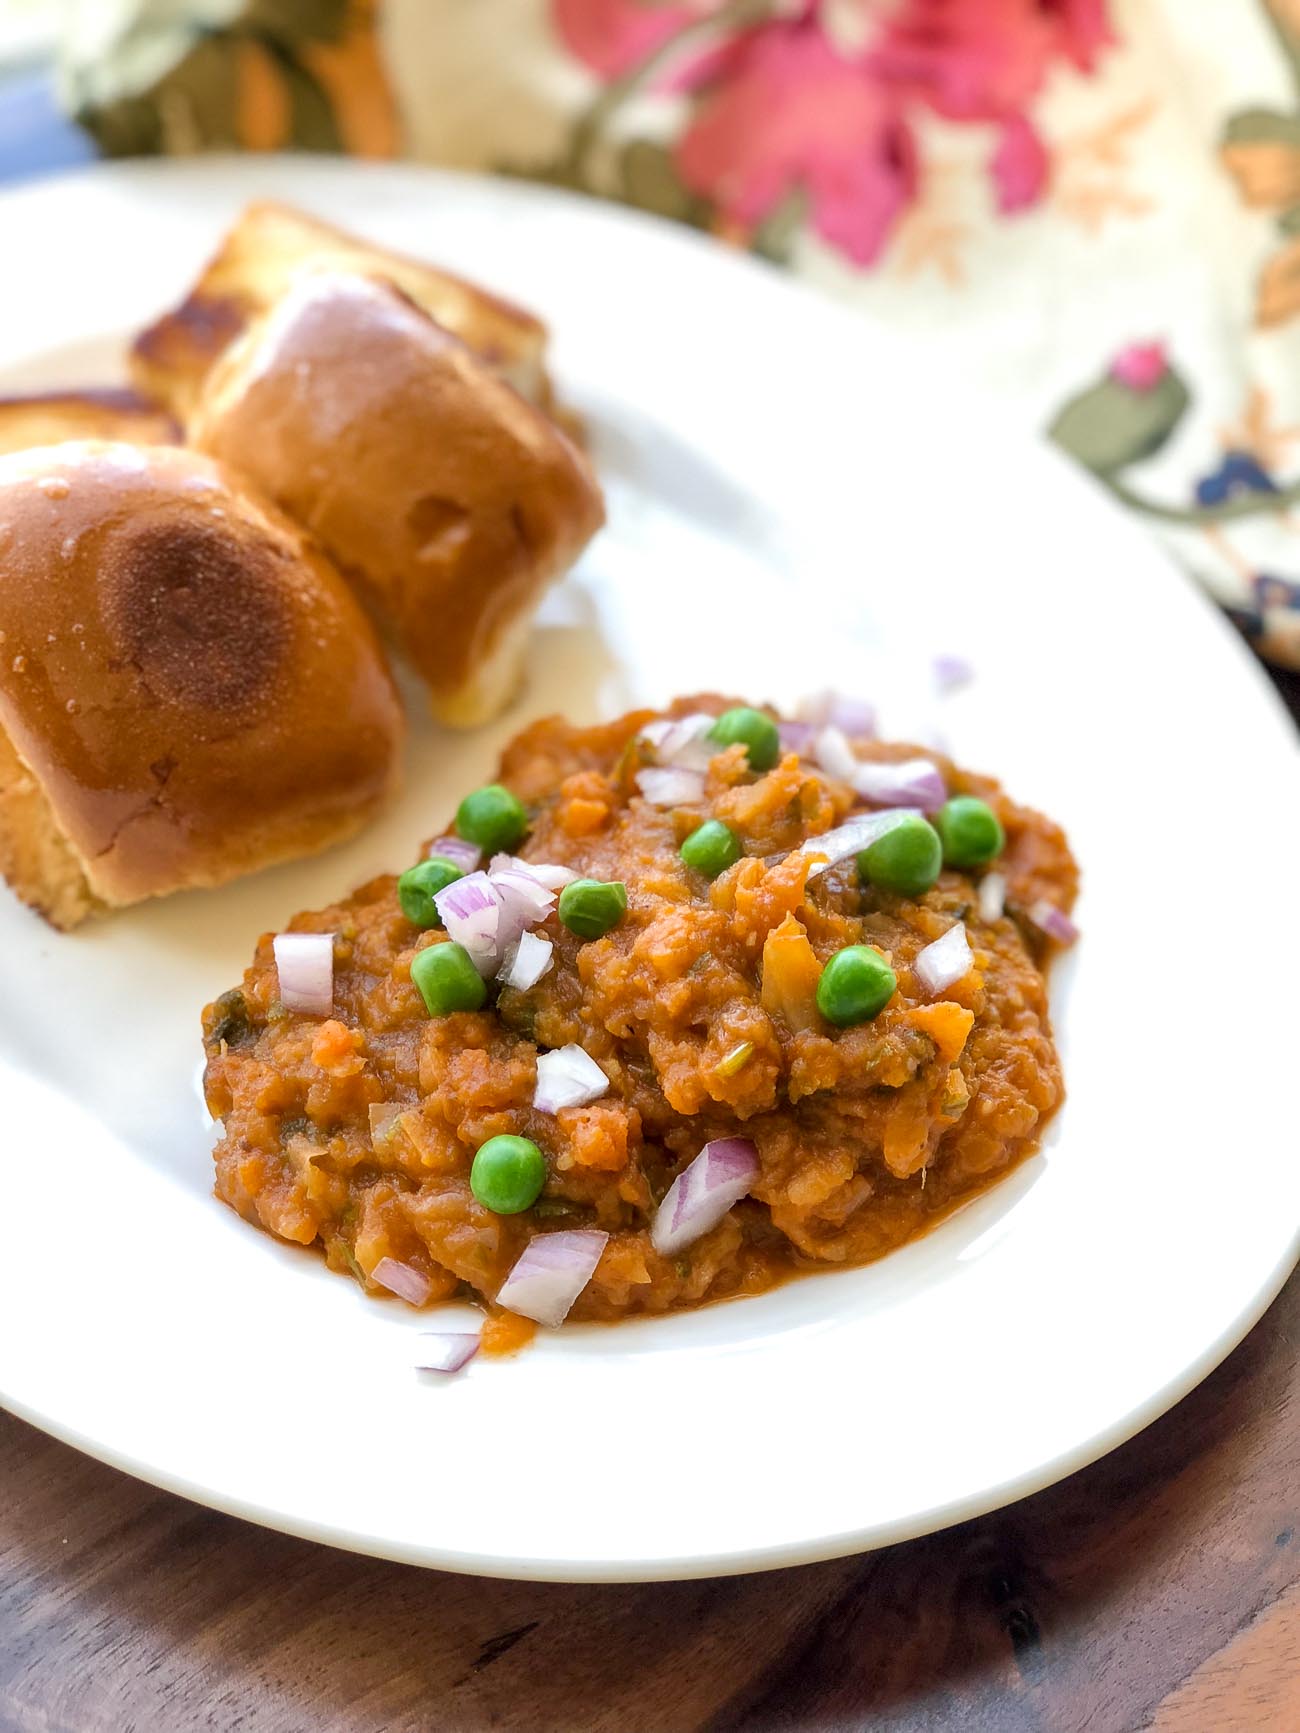 Homemade Pav Bhaji Recipe -Mumbai Style Street Food by Archana's Kitchen